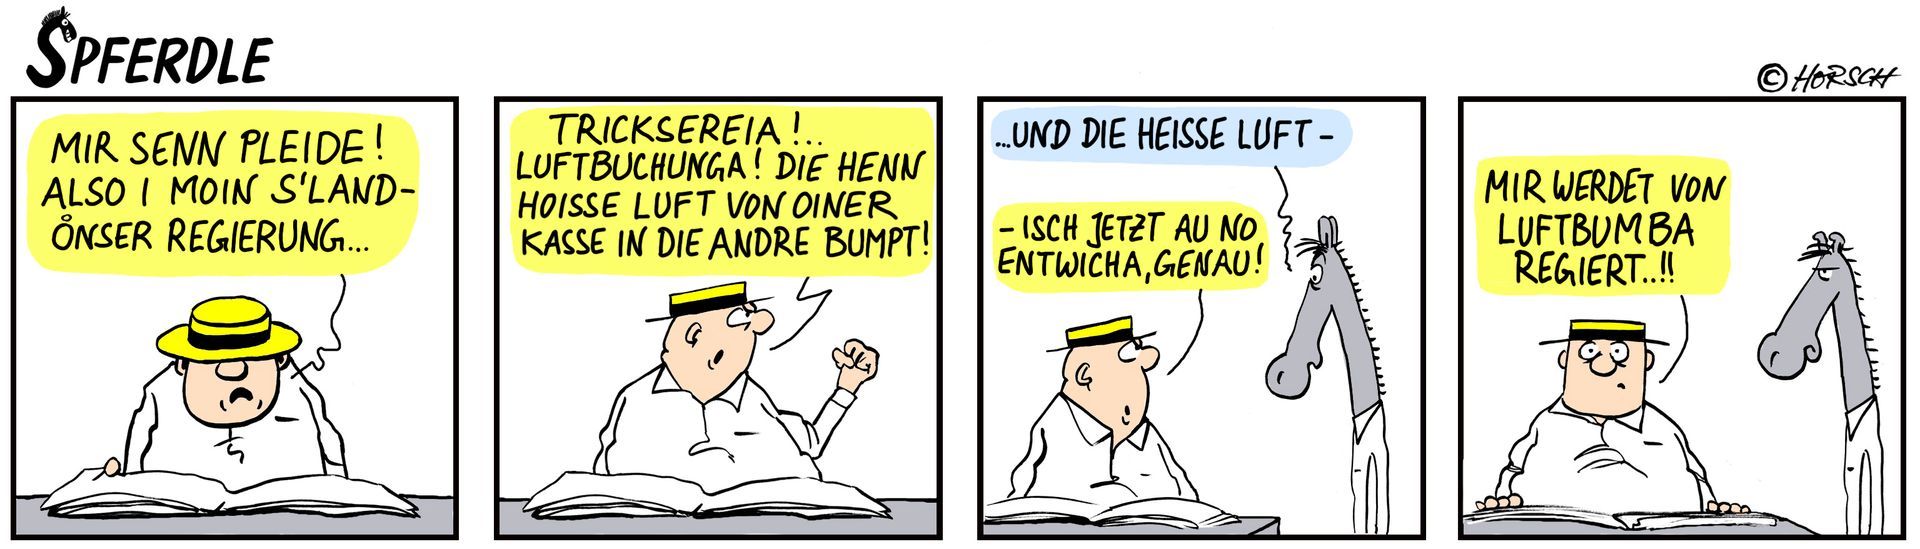 Schwäbischer Cartoon Spferdle - Wolfgang Horsch